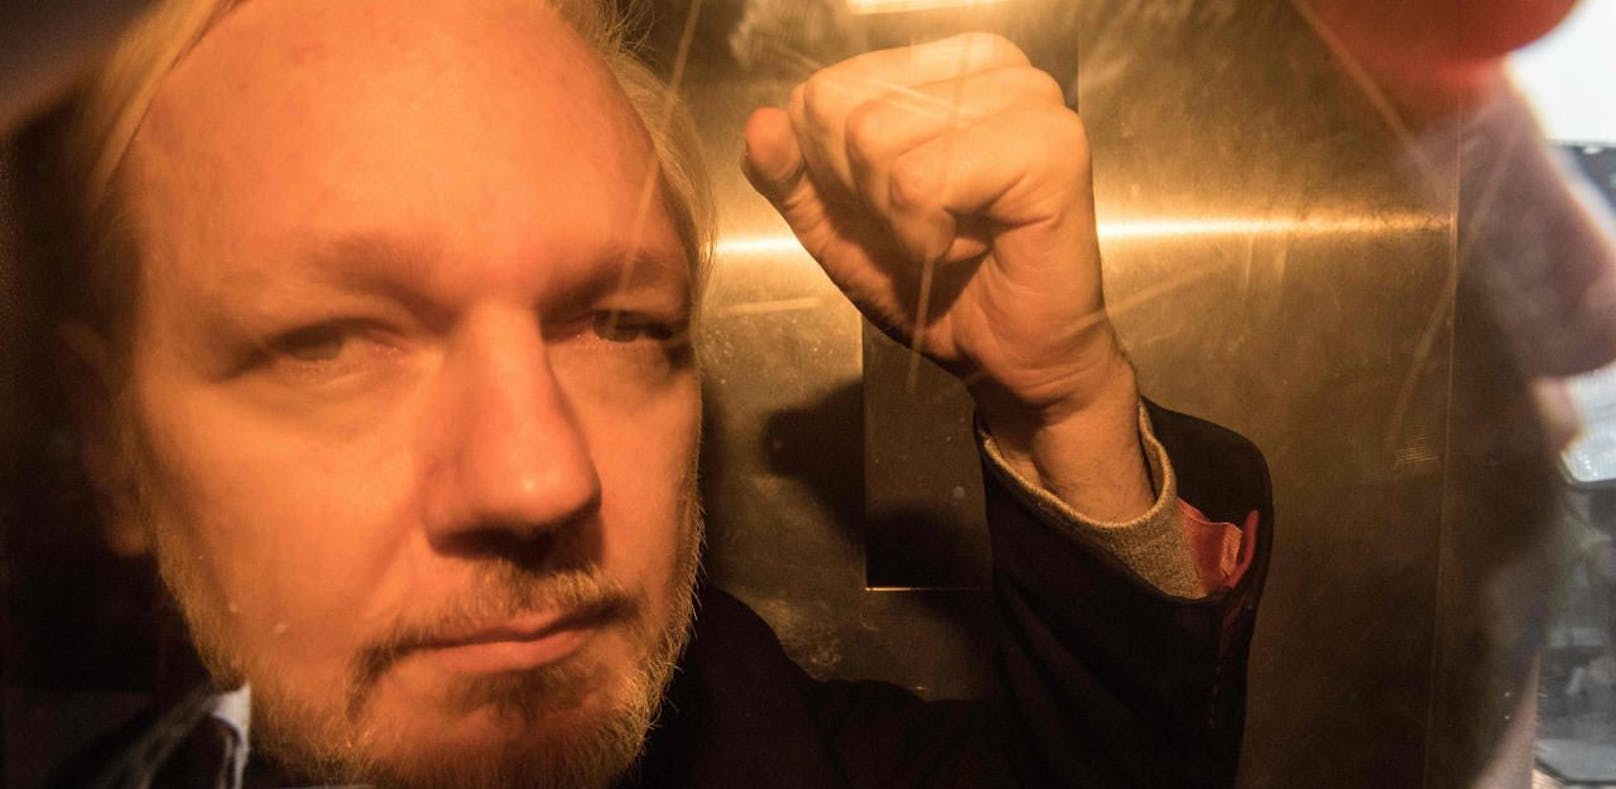 Assange laut UNO-Experte psychisch gefoltert